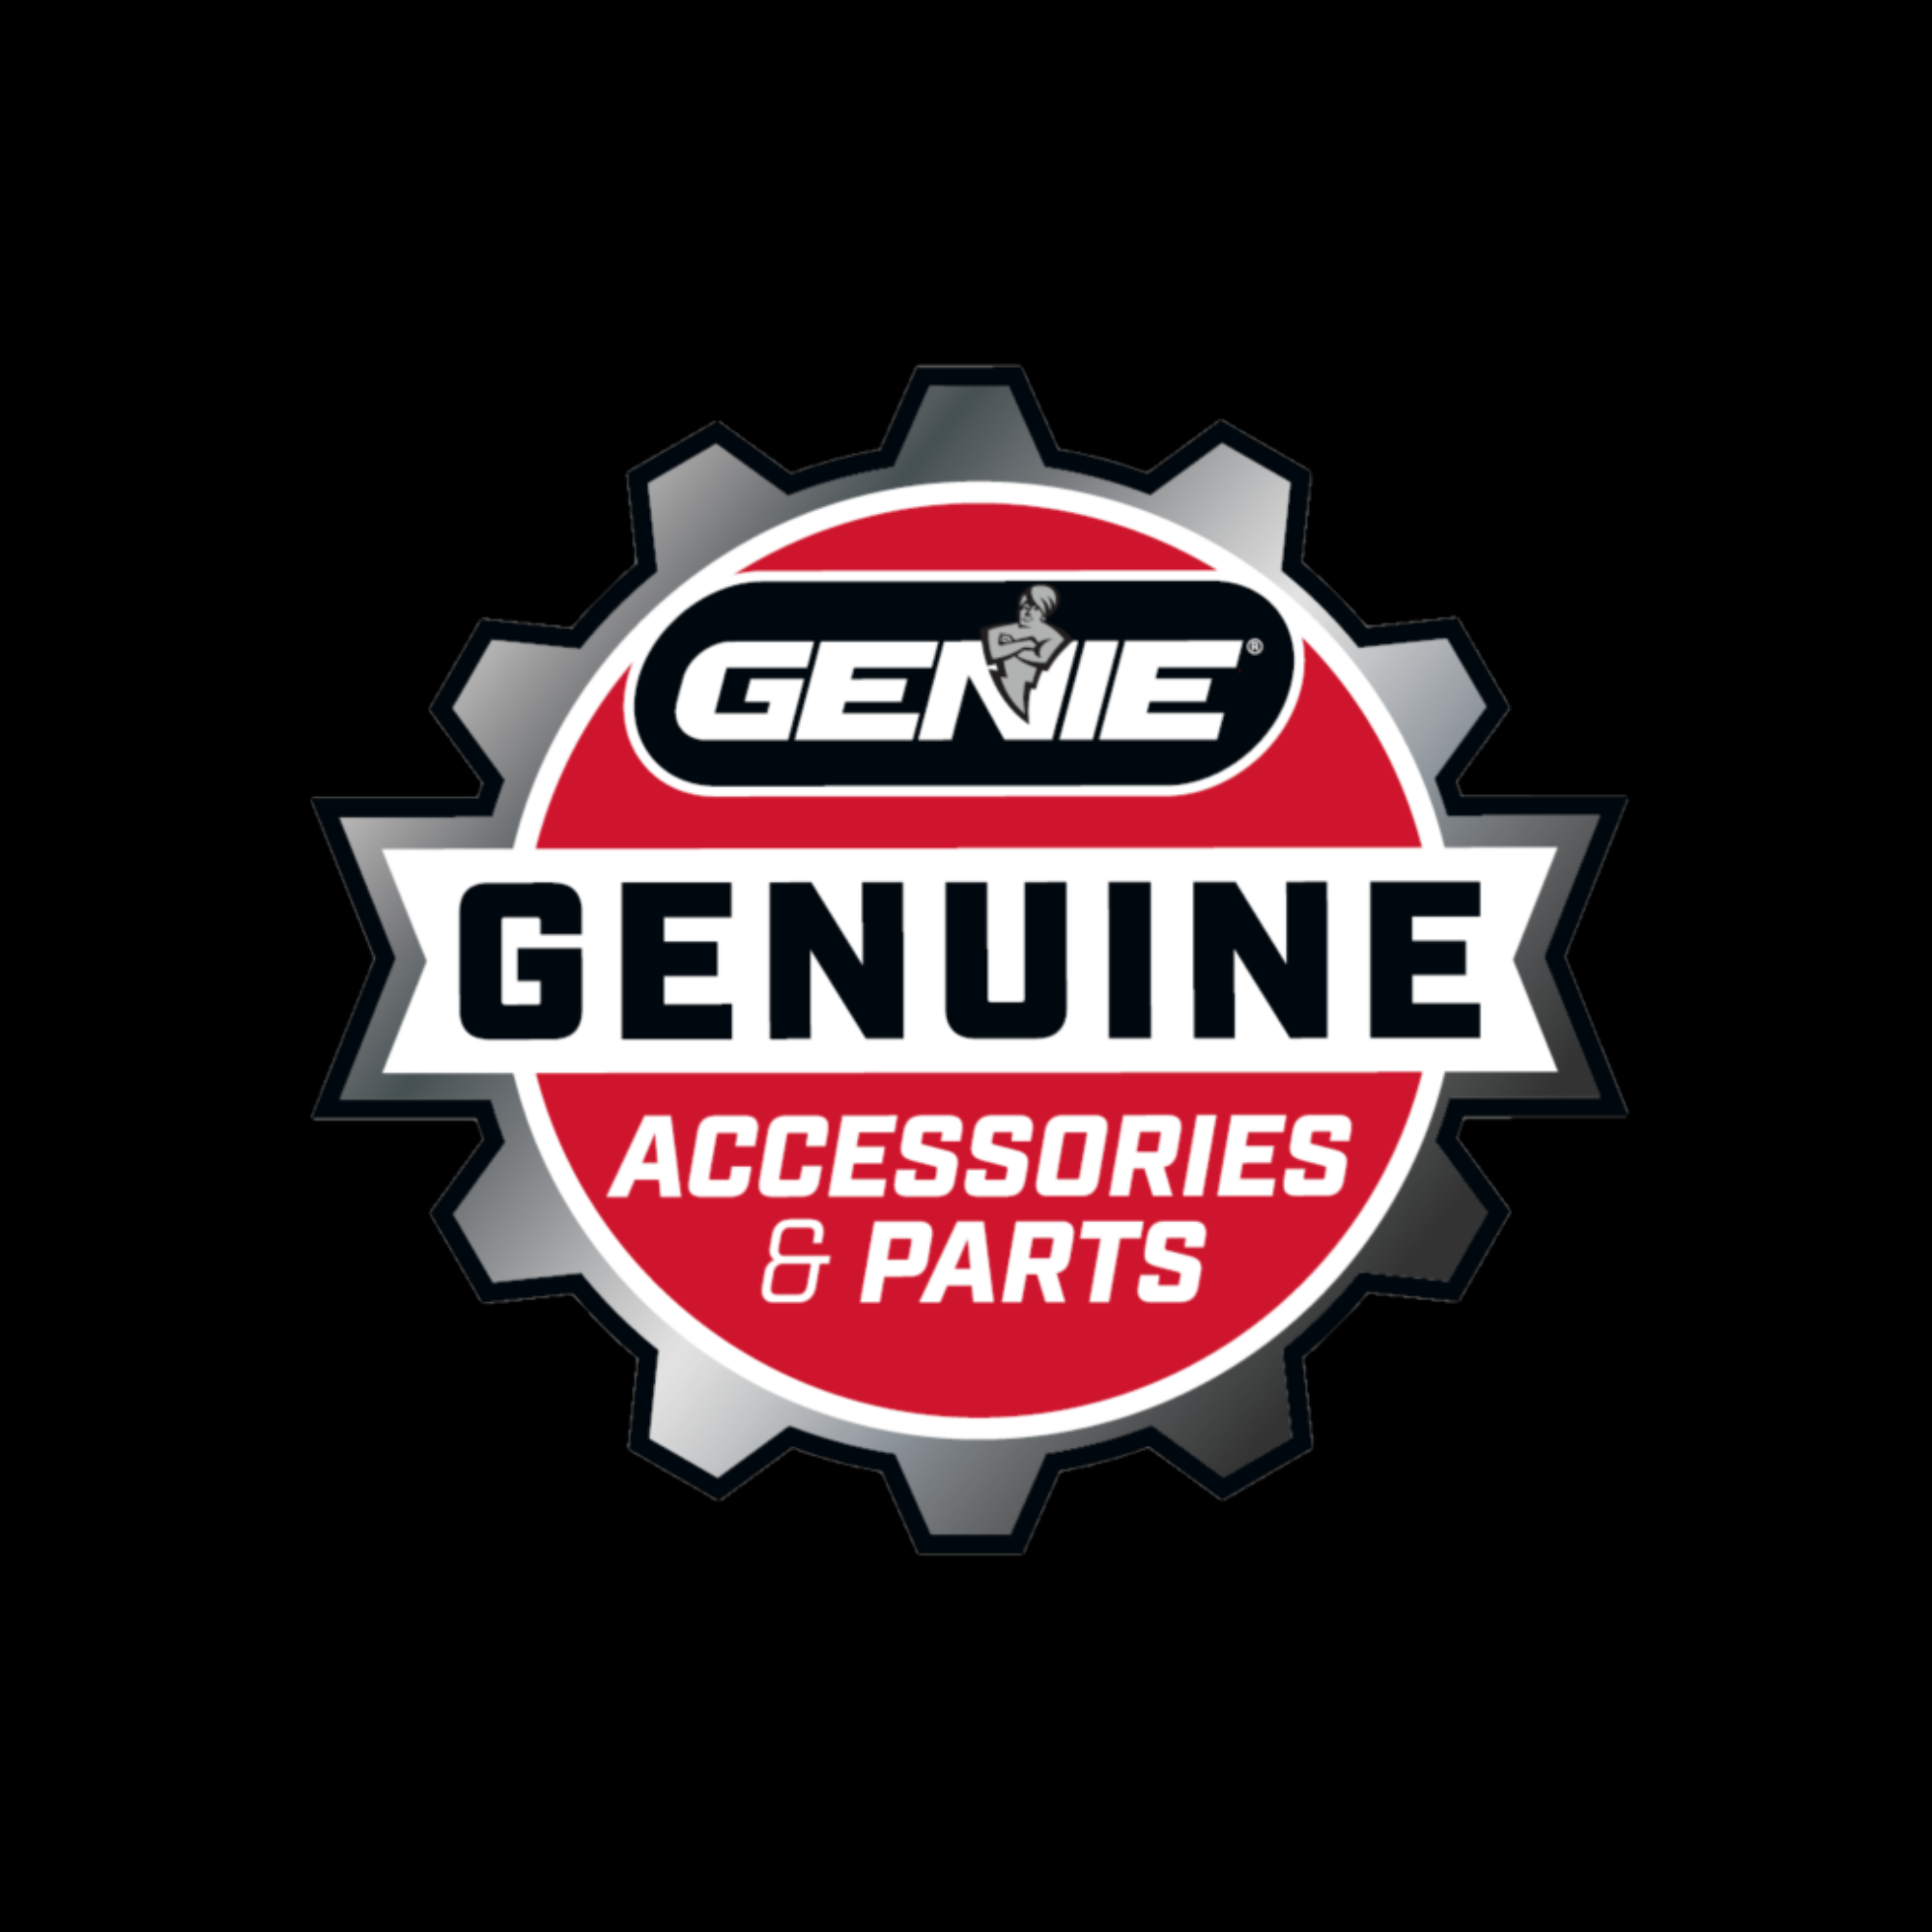 Genuine Genie Accessories and Parts